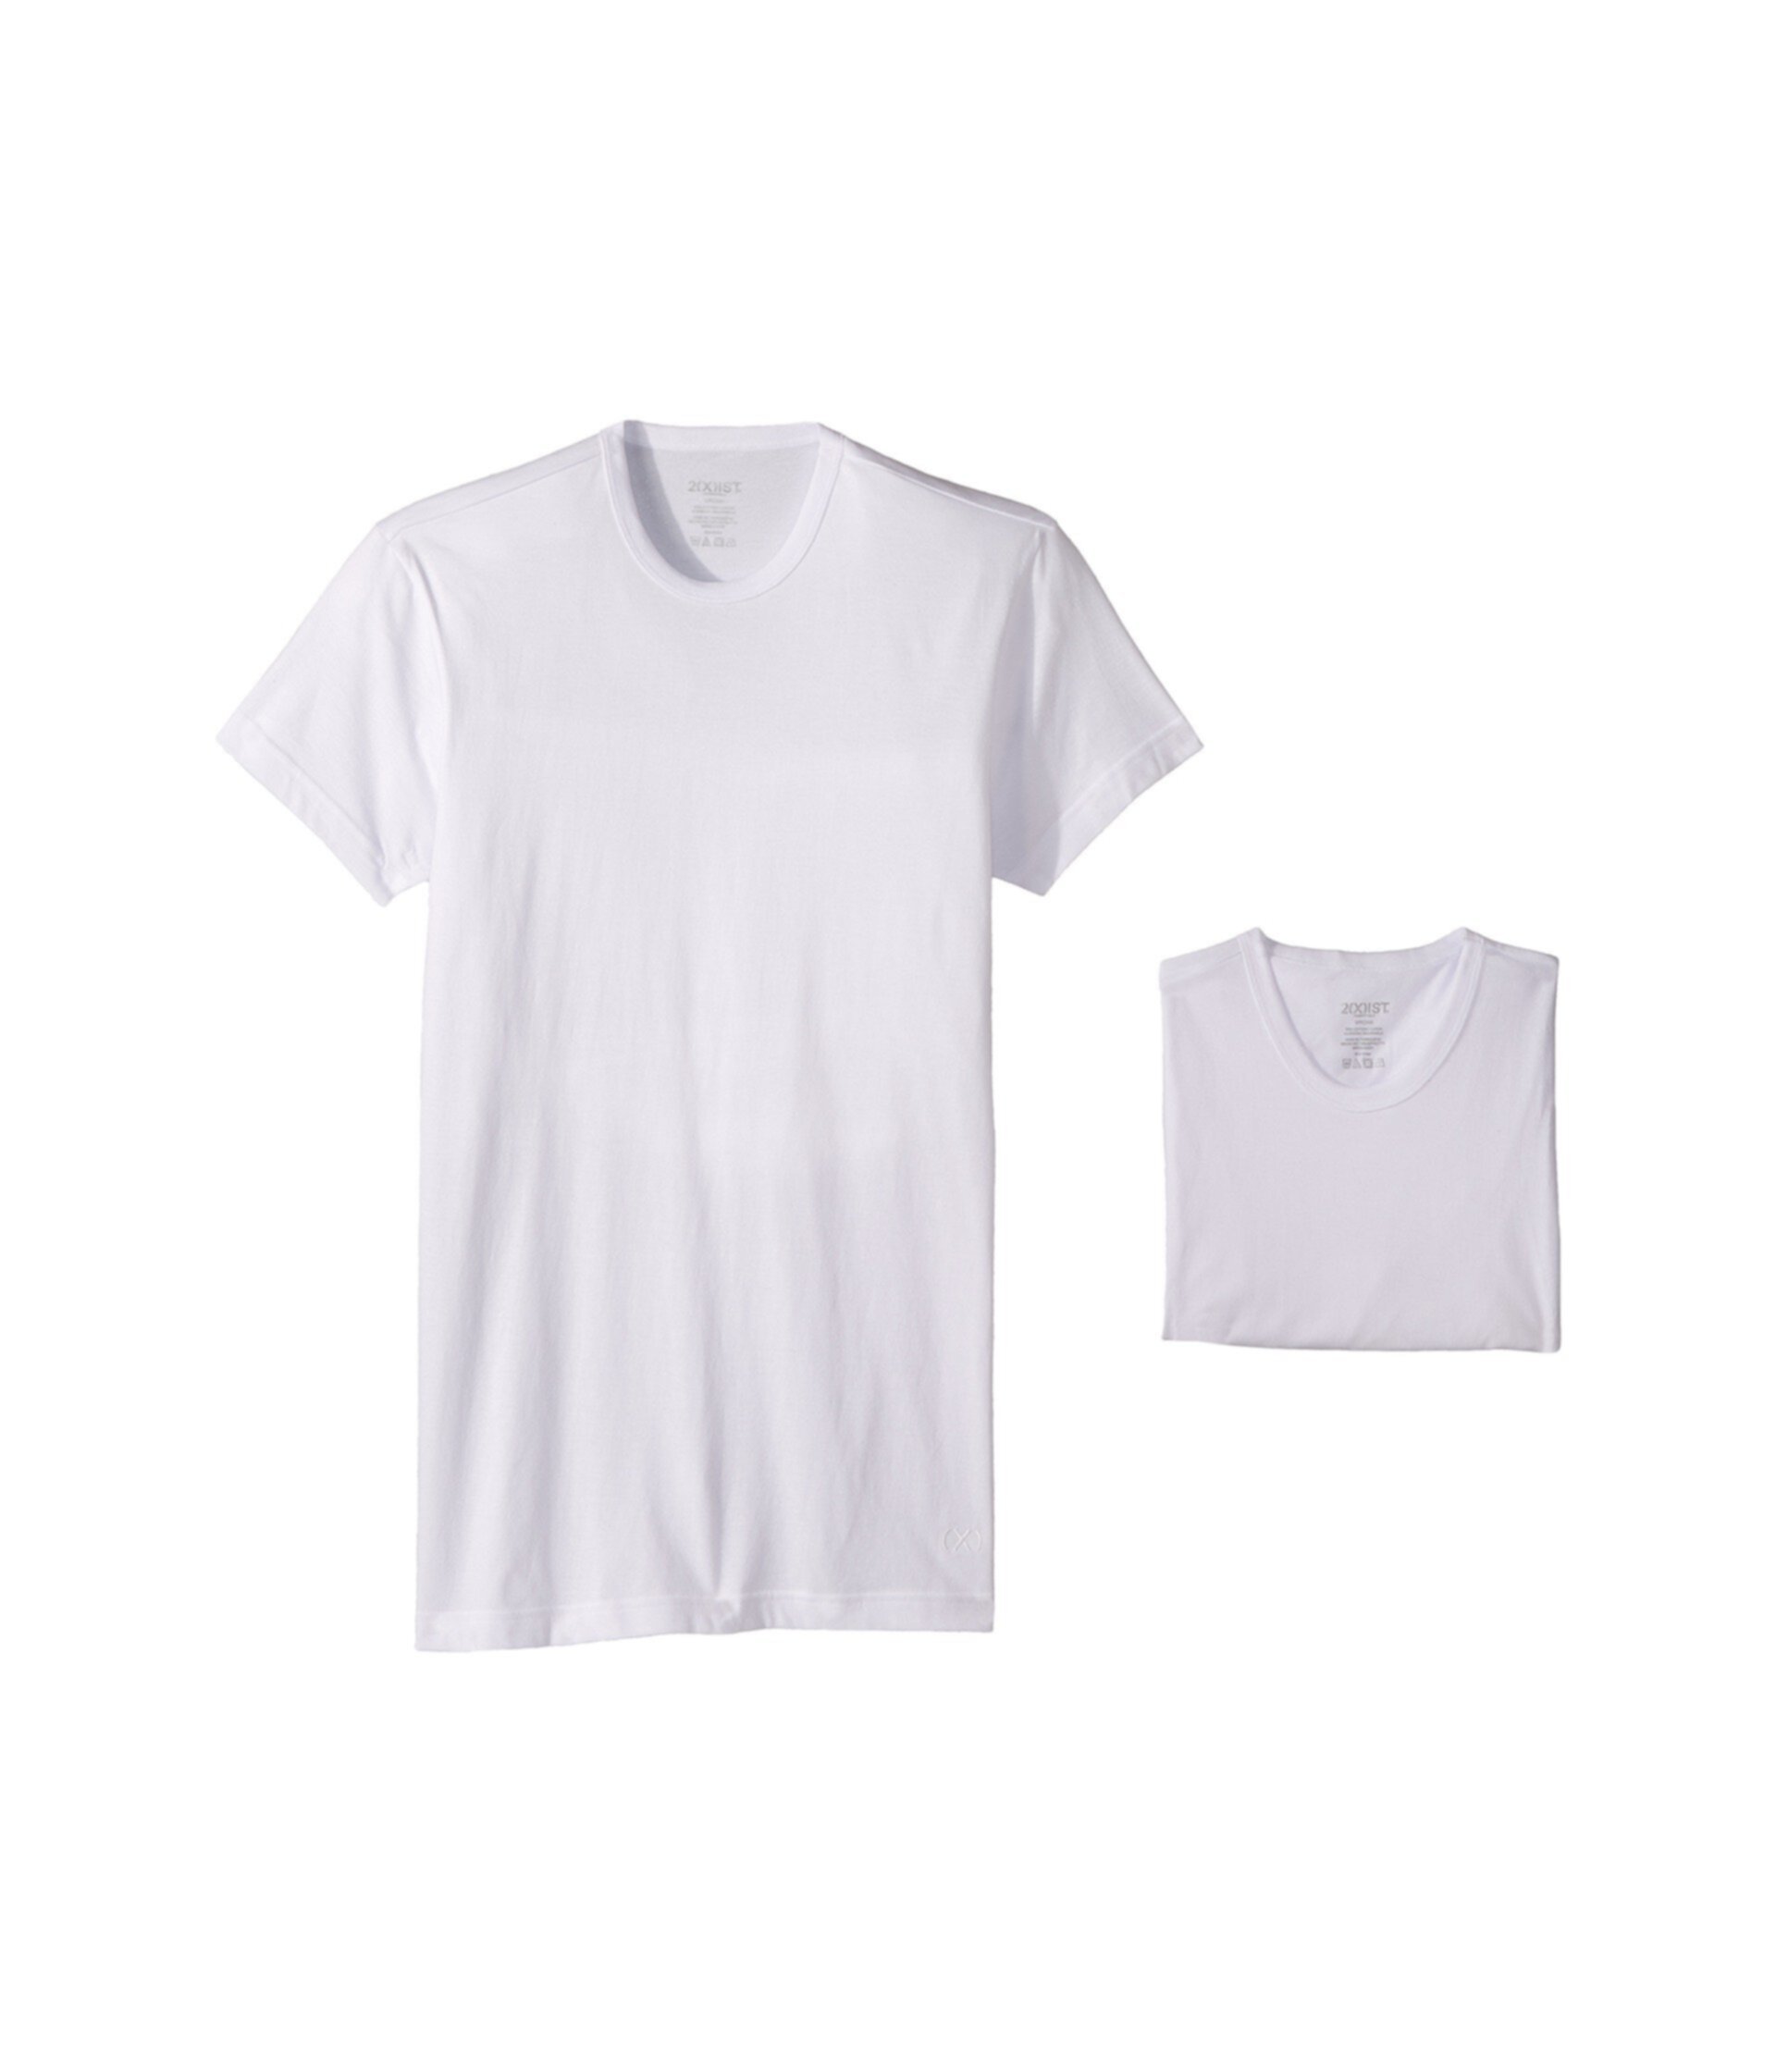 Облегающая облегающая футболка с круглым вырезом в комплекте 2(X)IST